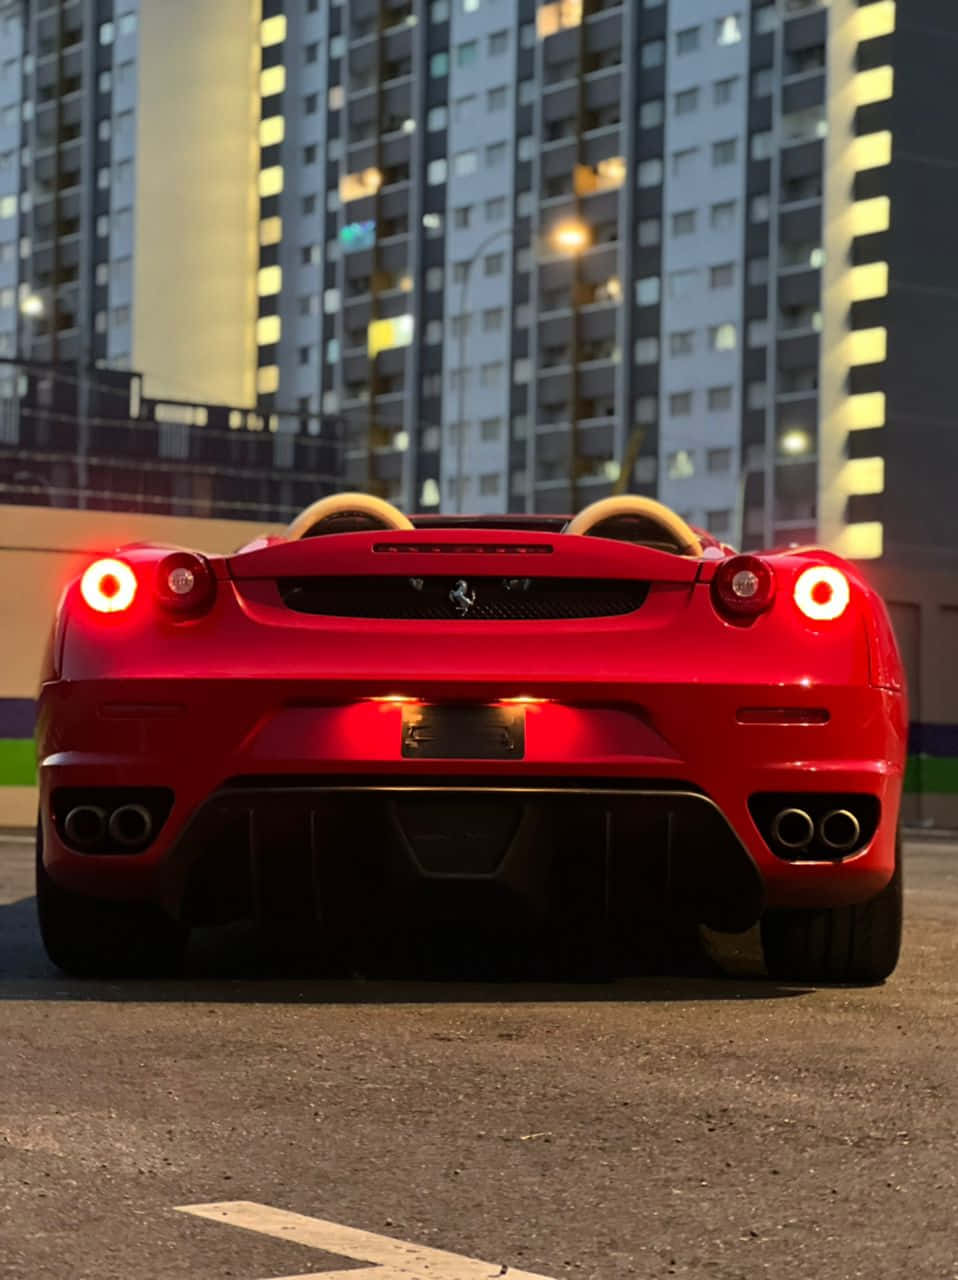 Dasneueste Ferrari Iphone X - Halte Dich Mit Luxus Auf Dem Laufenden. Wallpaper